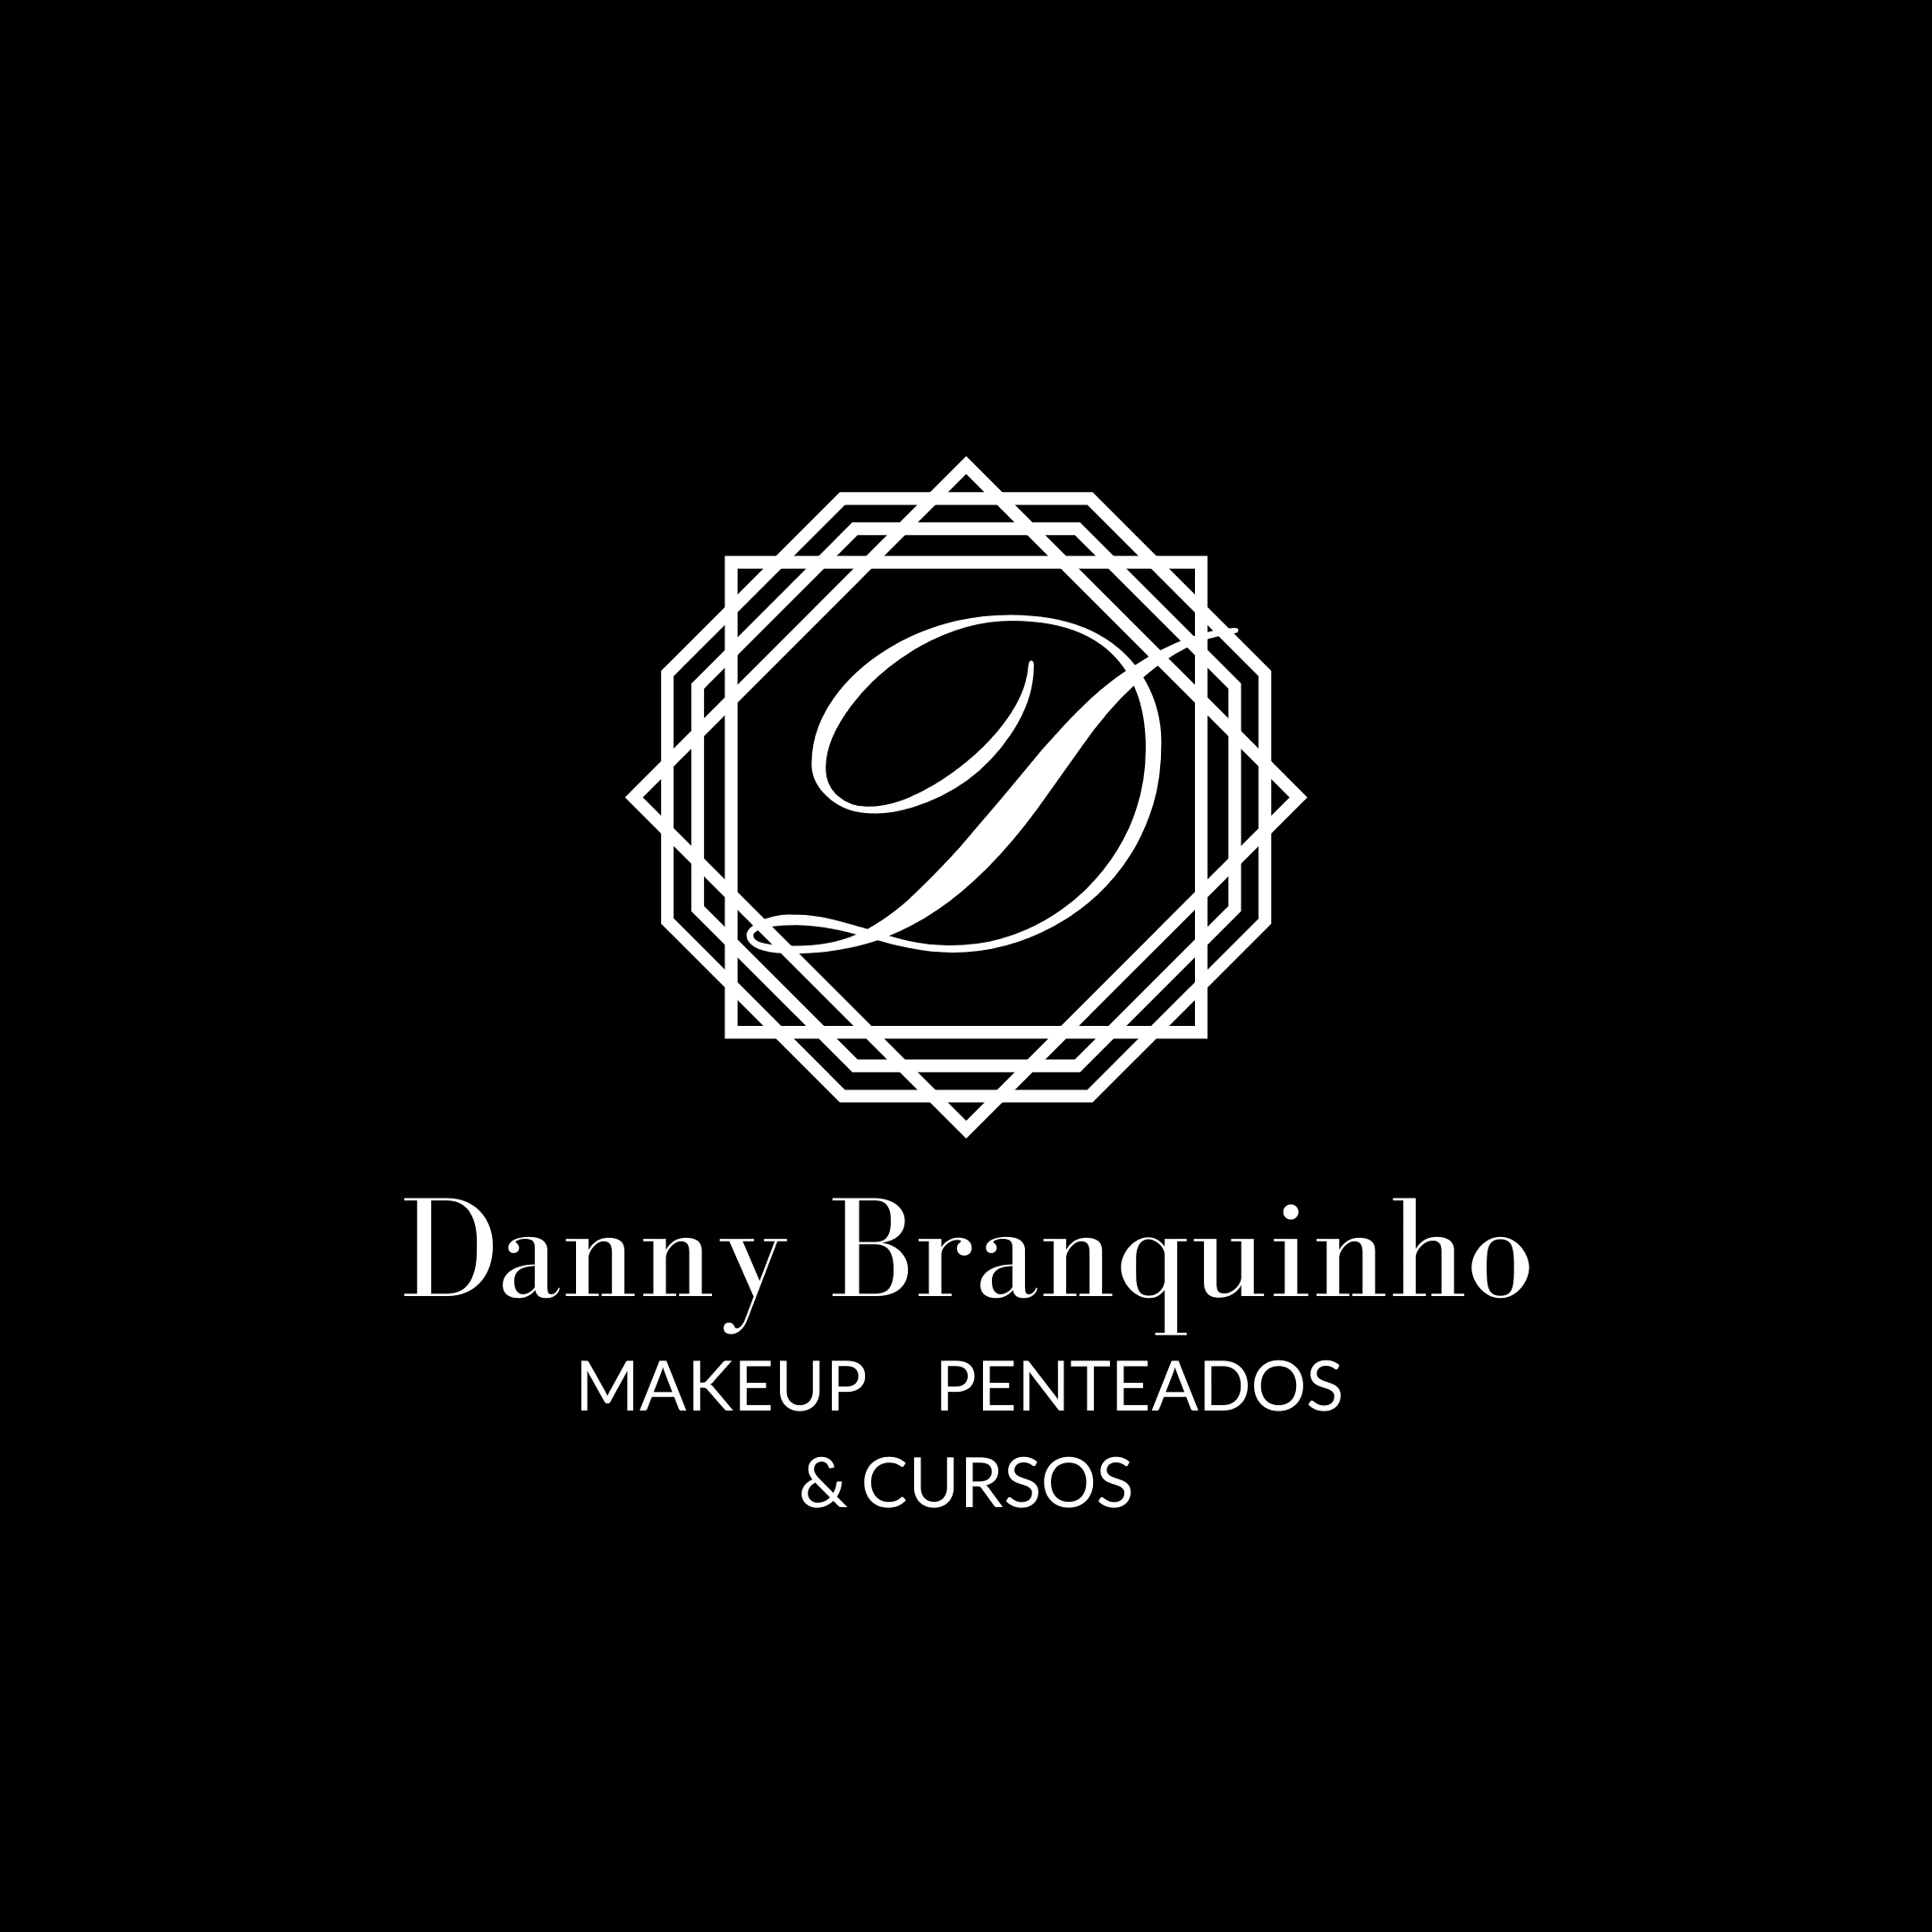 Ateliê Danny Branquinho